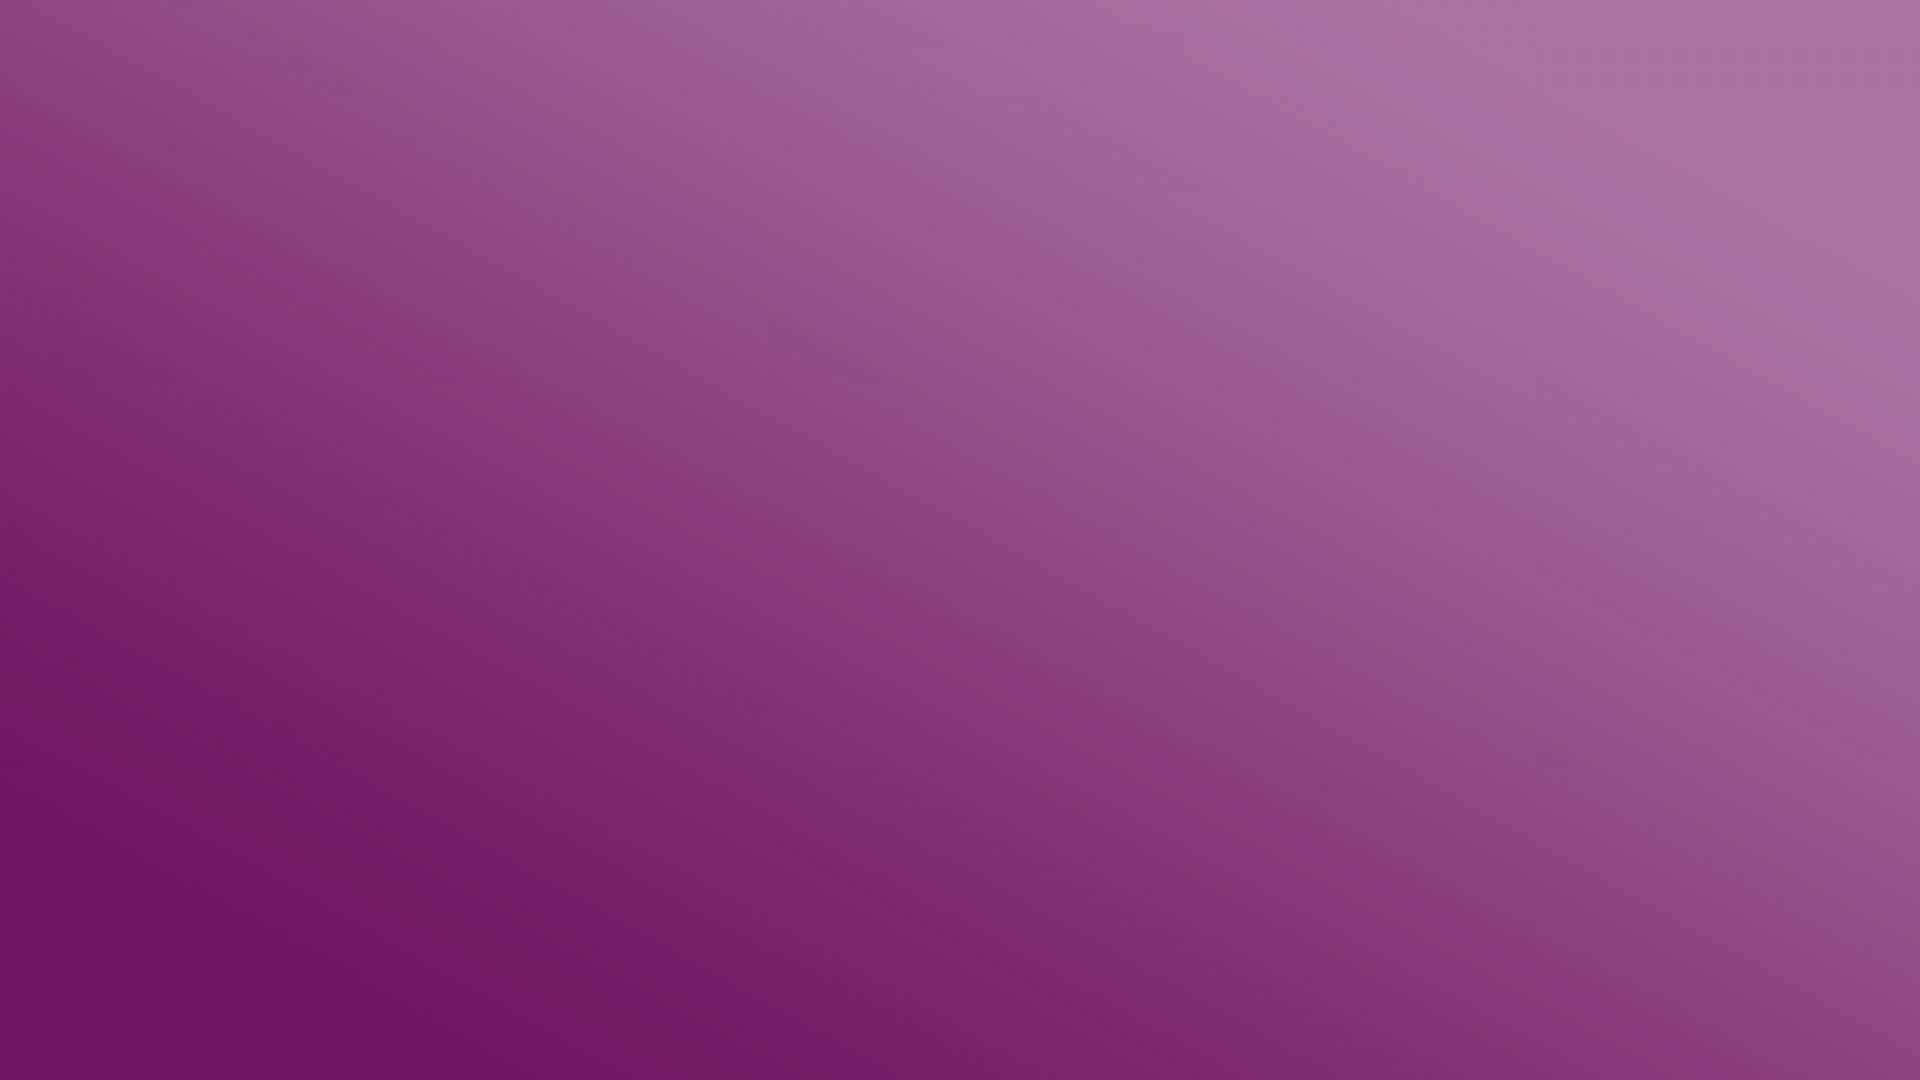 Full HD 1080p Purple Wallpapers HD, Desktop Backgrounds 1920x1080